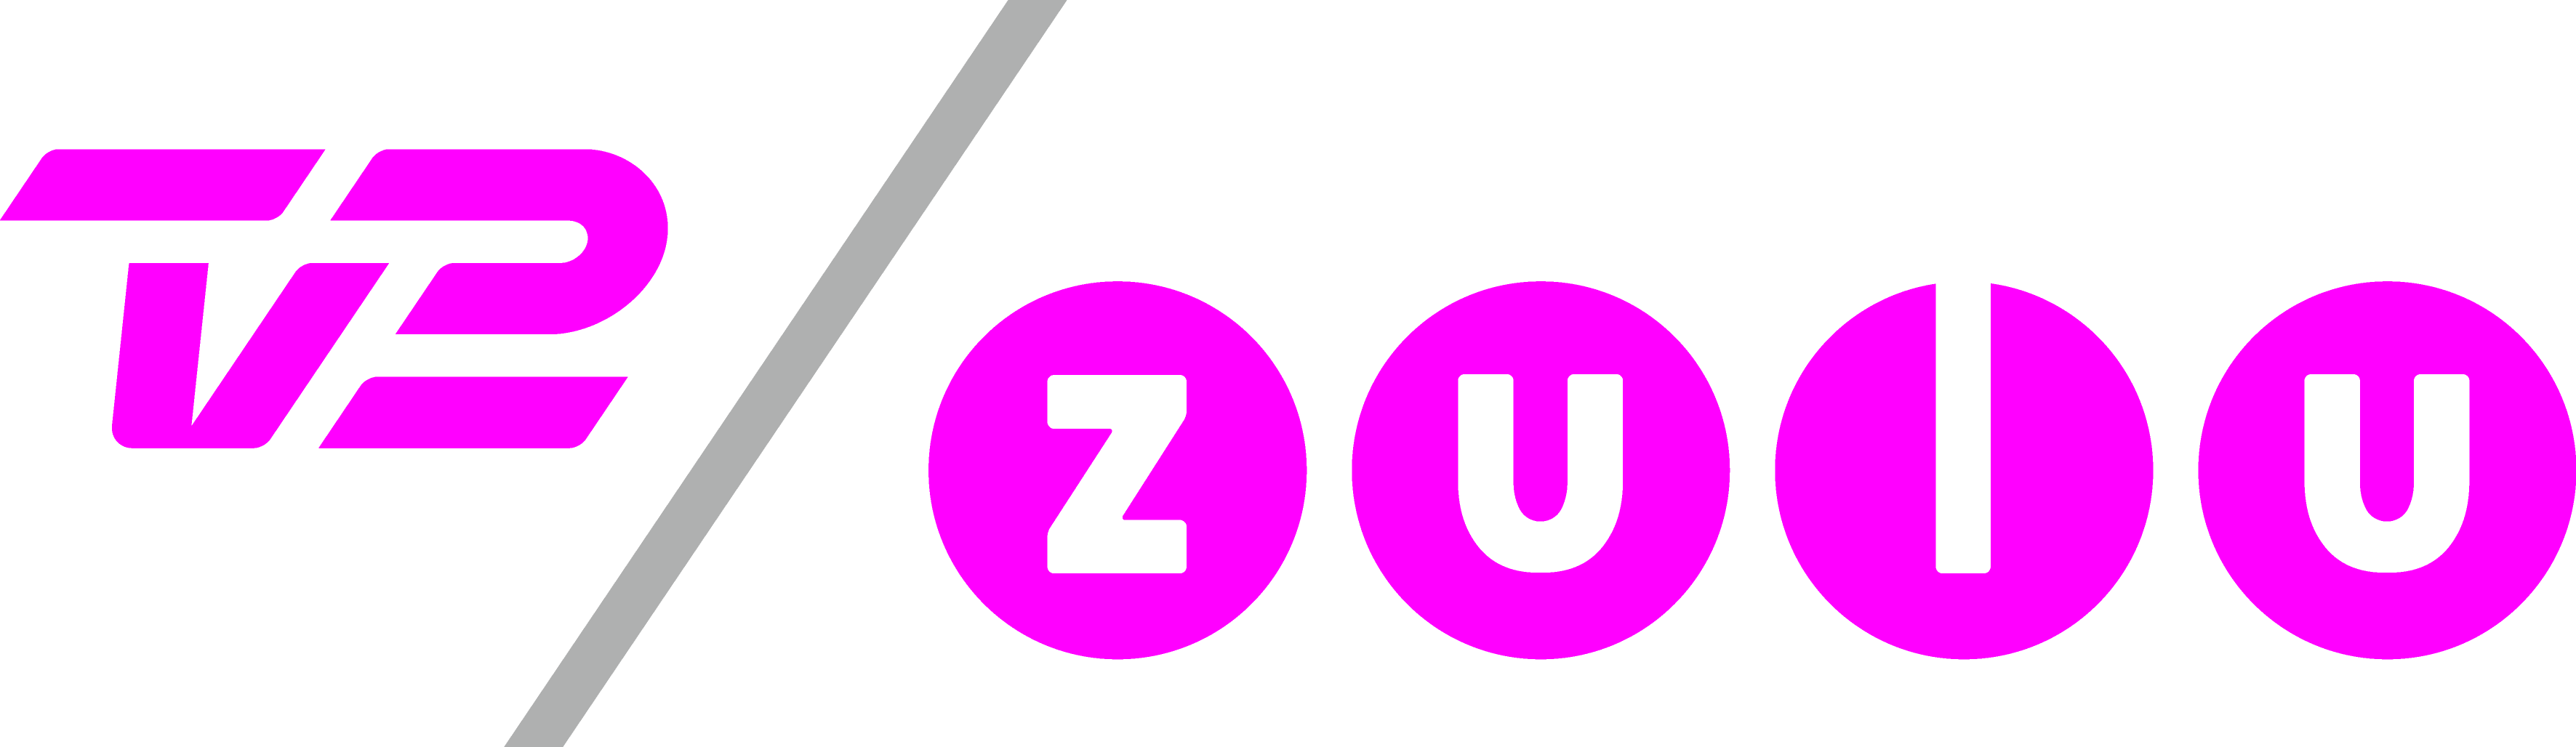 TV 2 Zulu